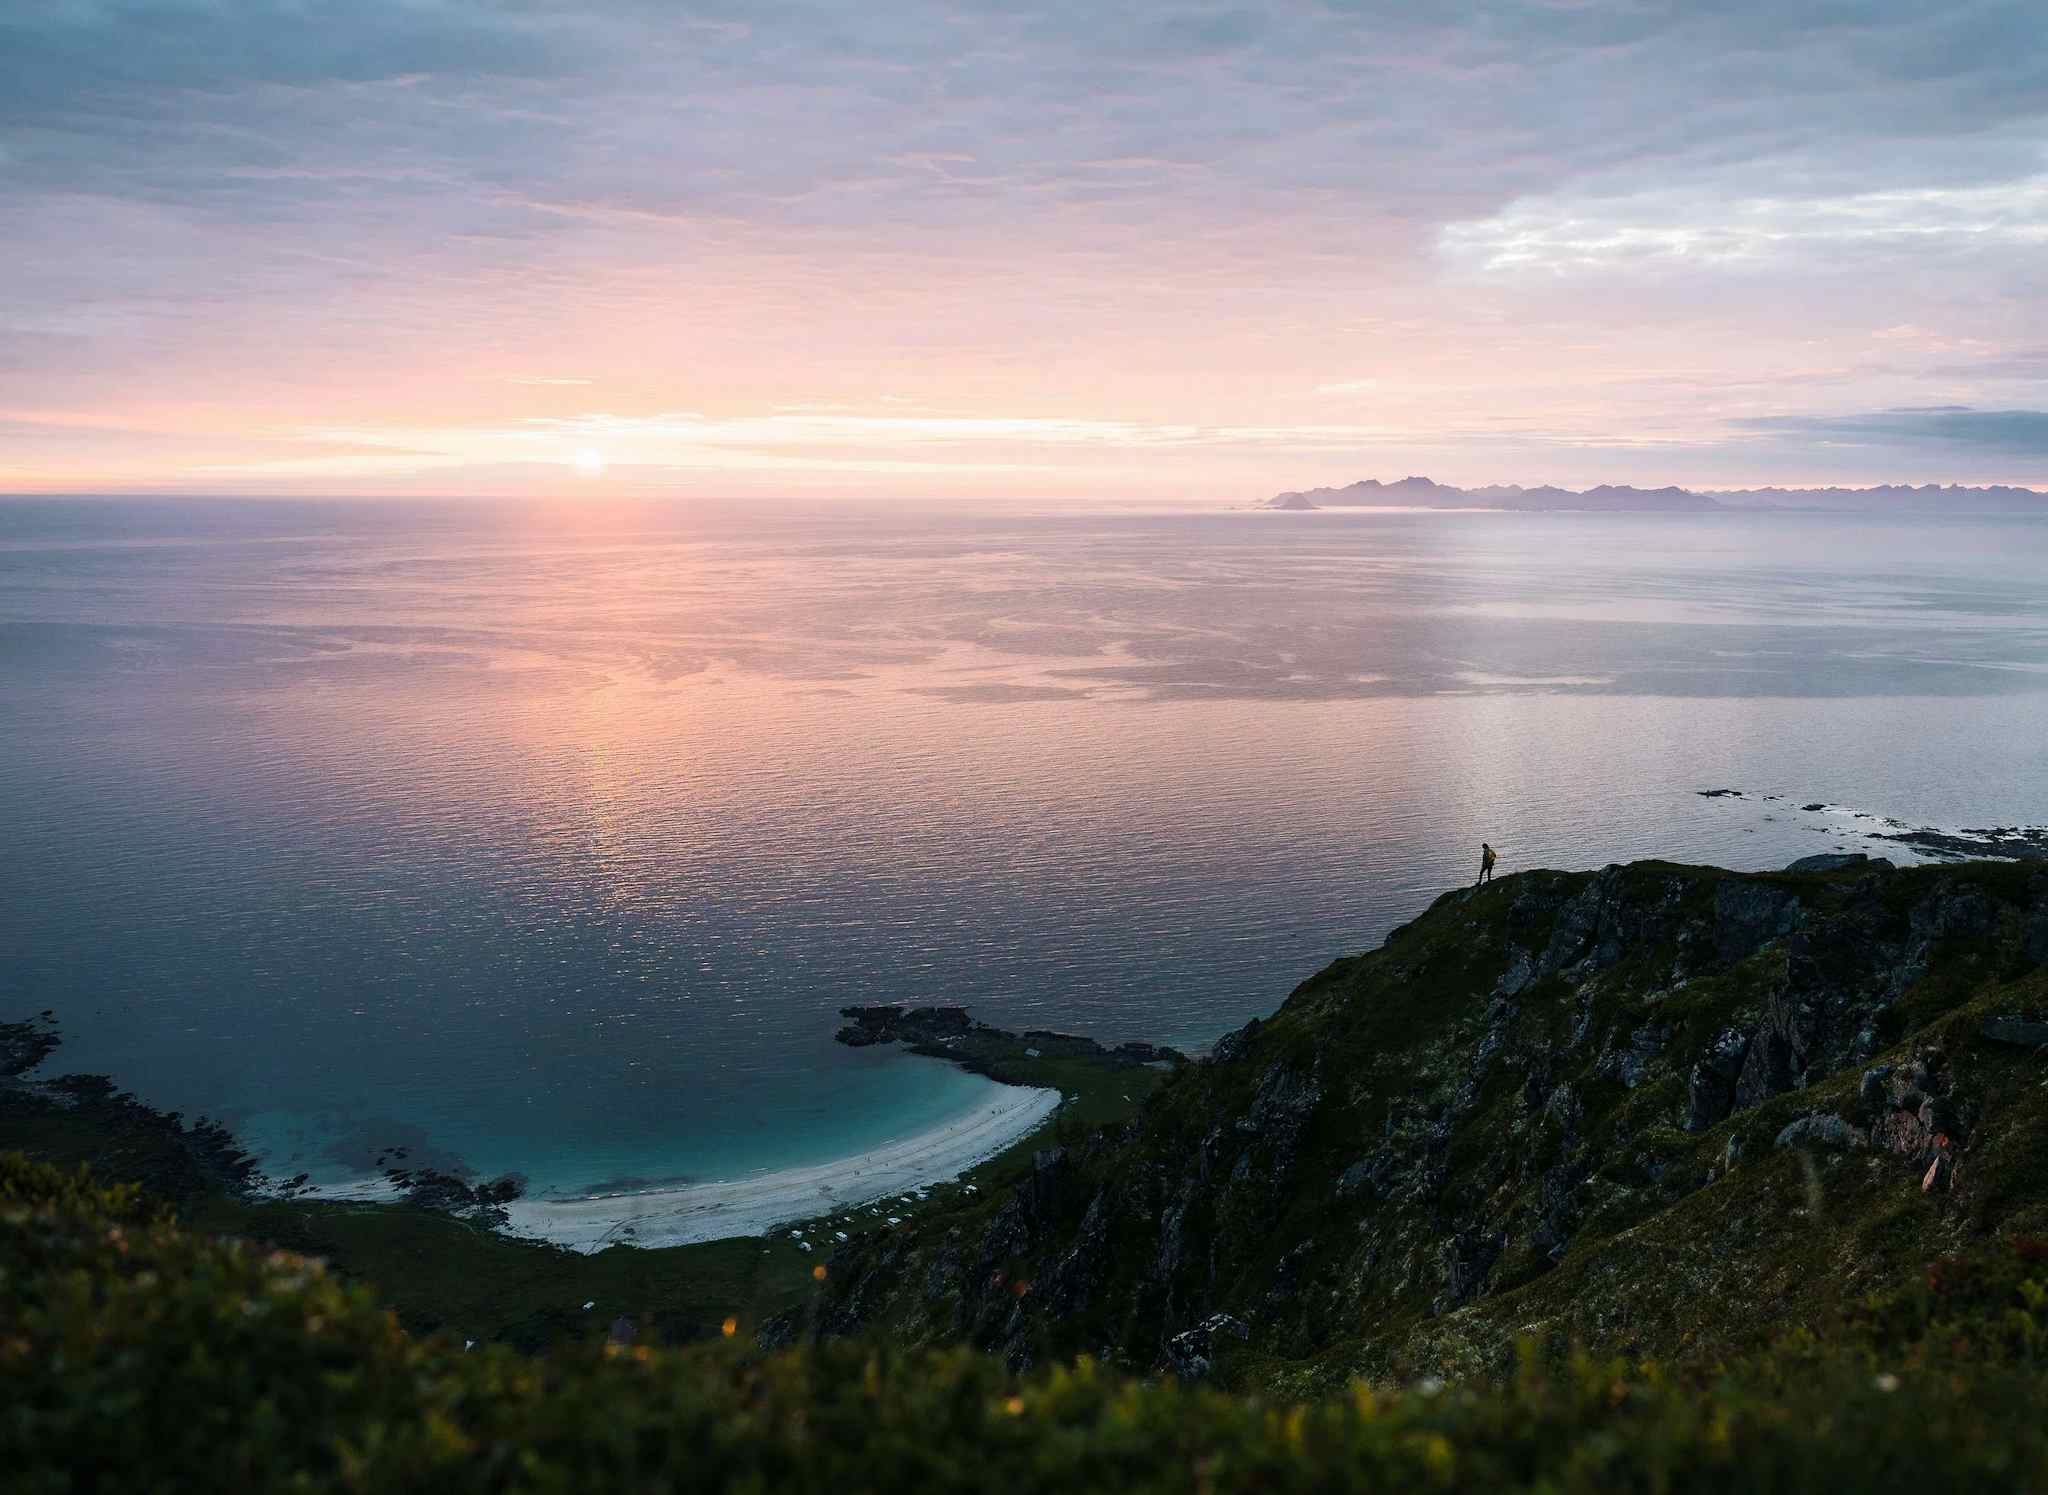 Gimsoya island, midnight sun, Lofoten, Norway
Host image: Pukka Travels